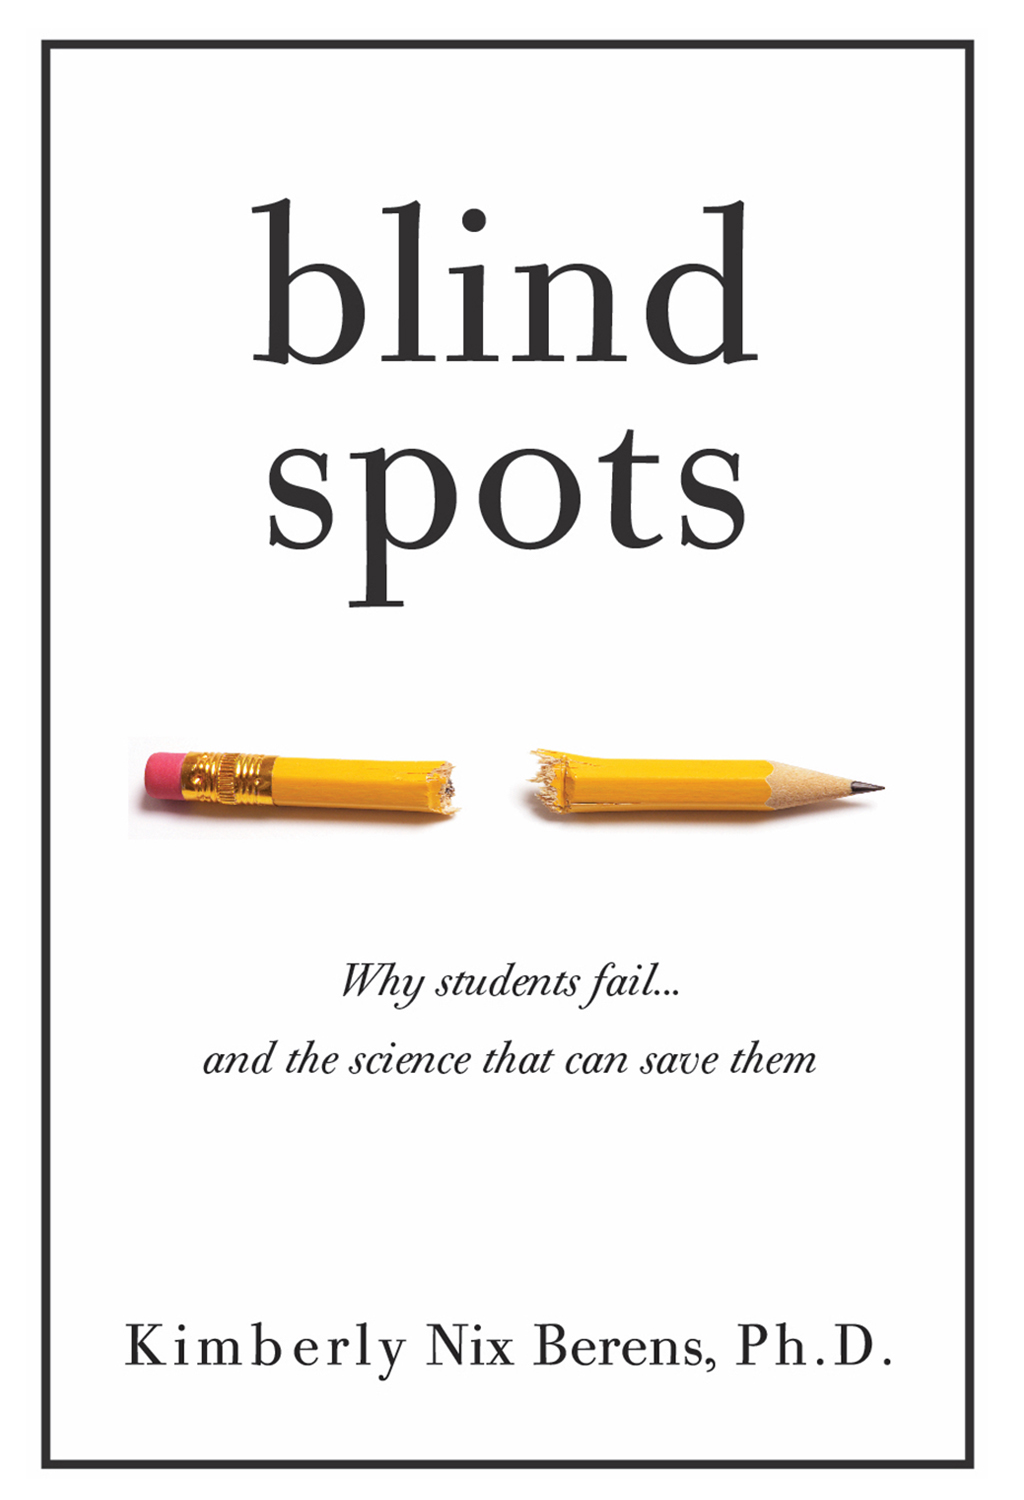 Blind spot. Failed student. Blind book. Student failed